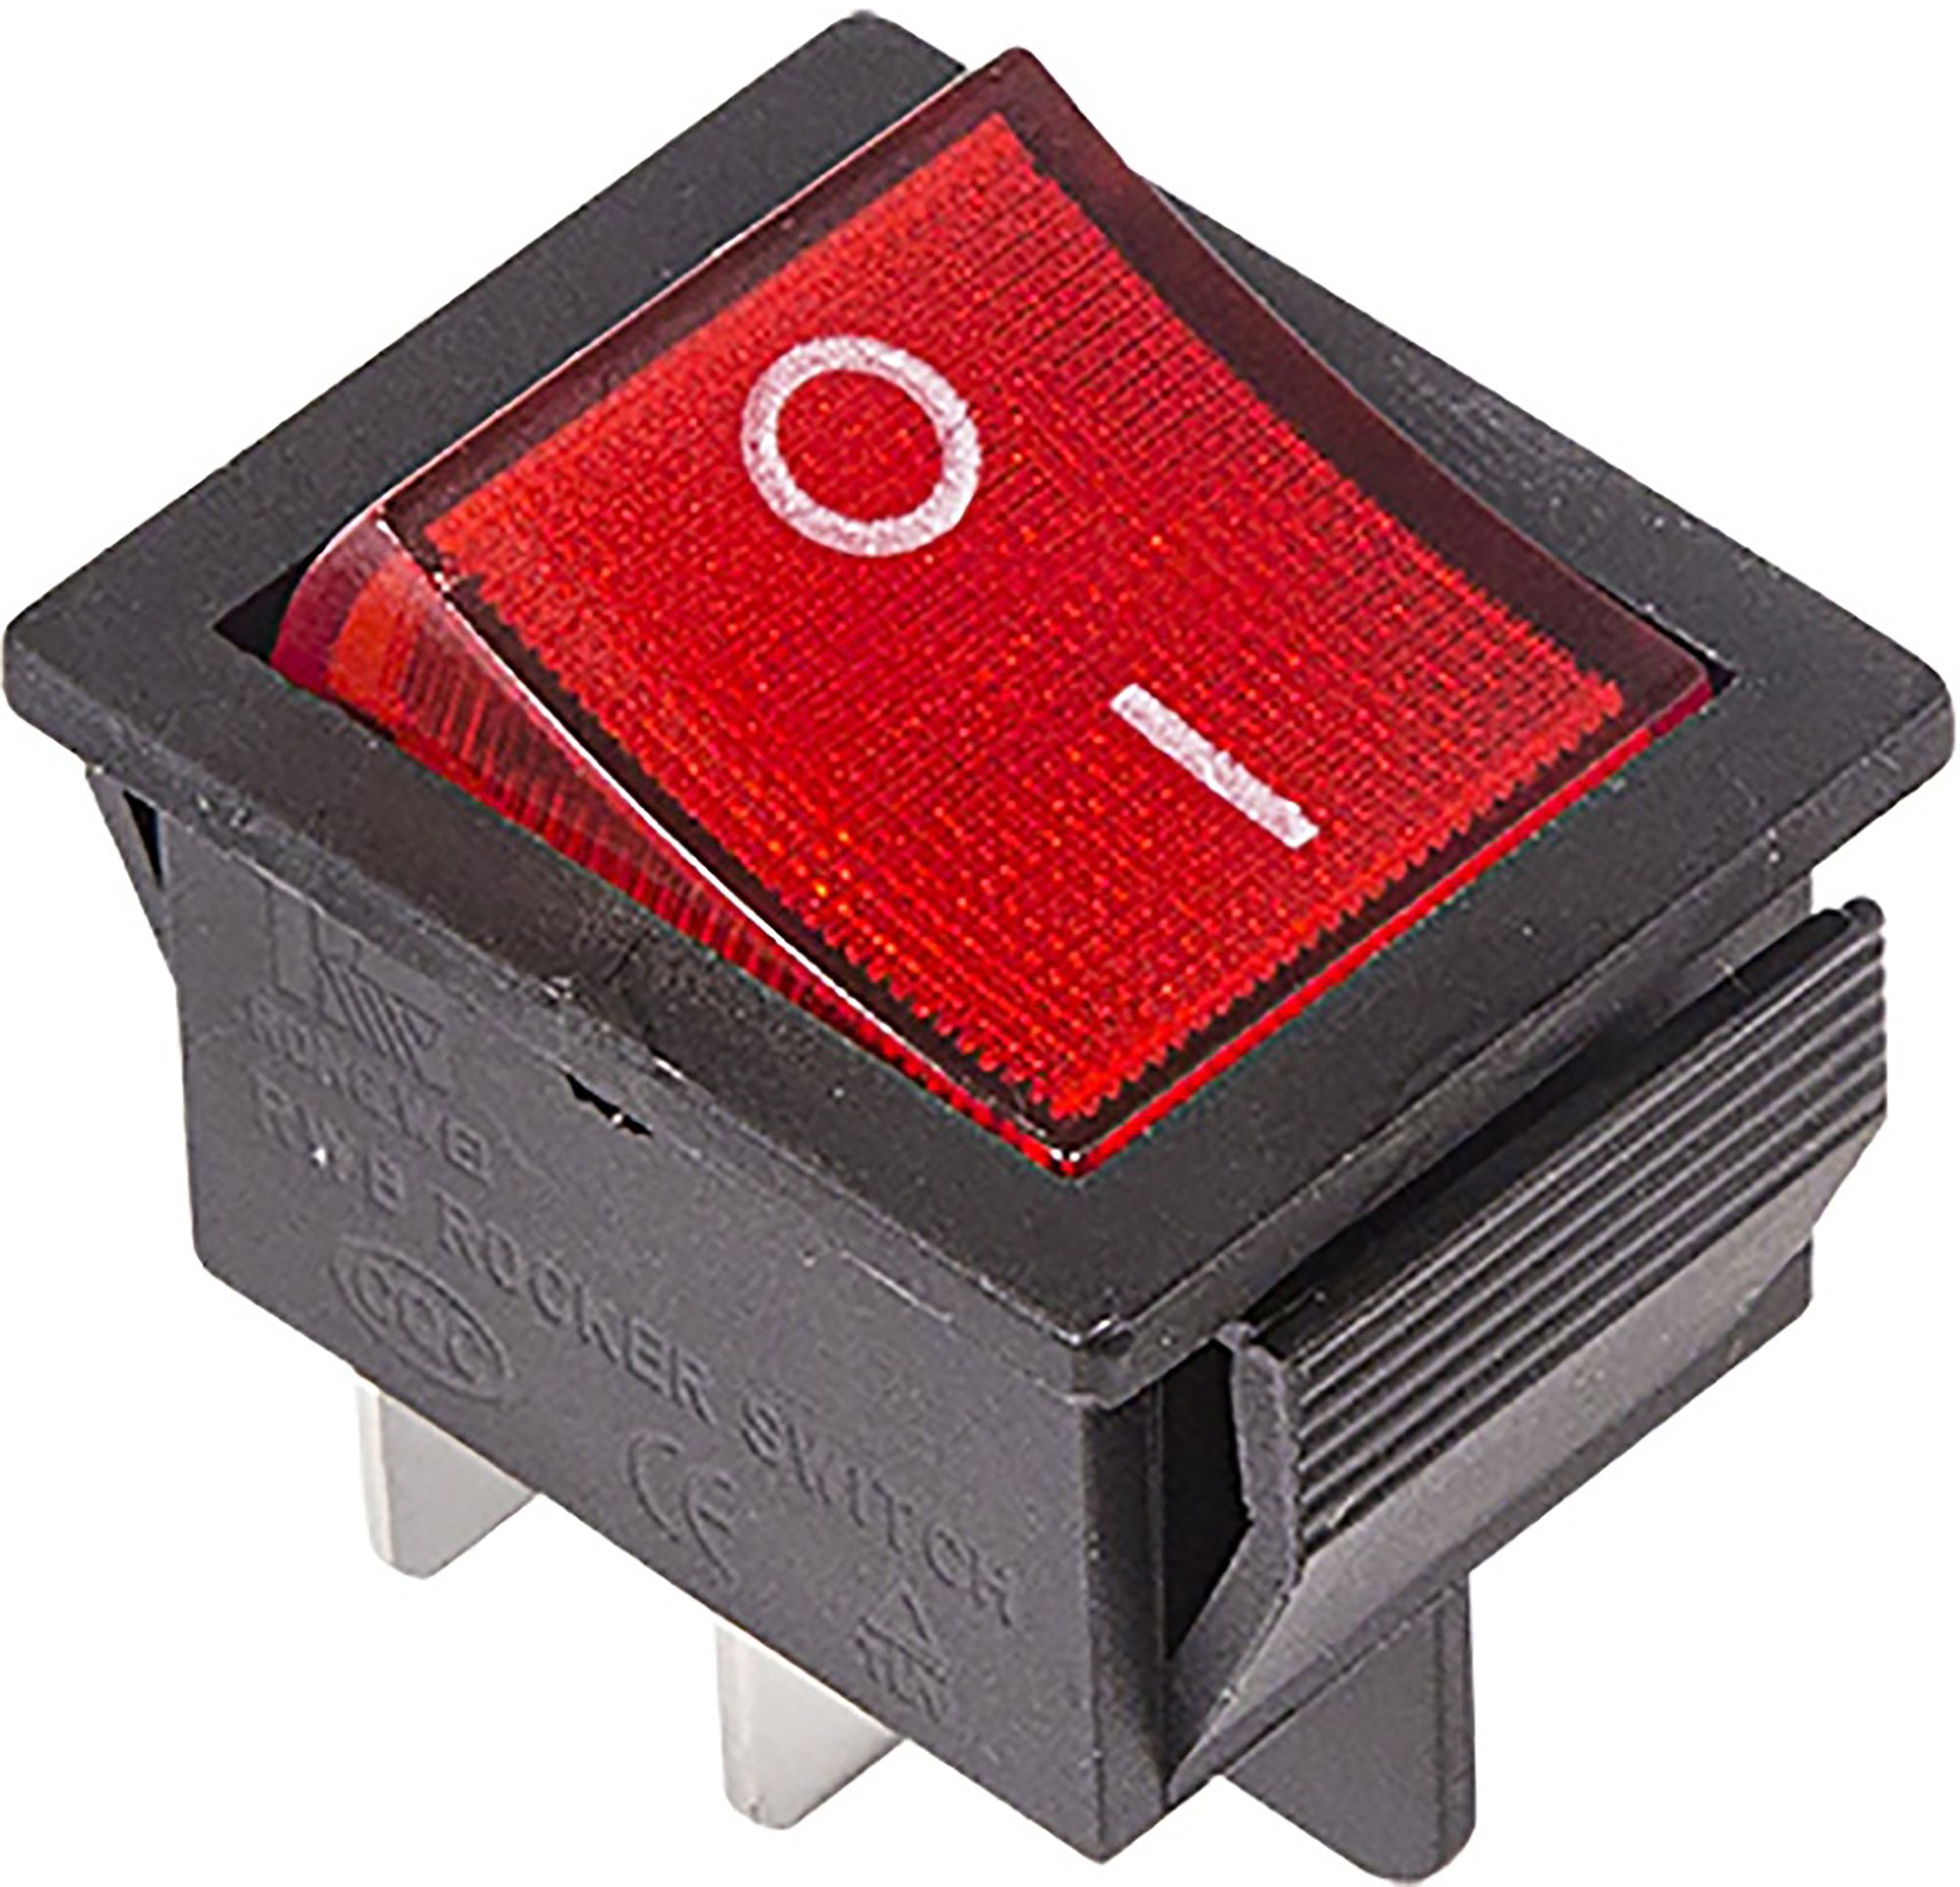 Купить выключатель для квартиры. Выключатель клавишный 250v 16а 4с on-off красный с подсветкой Rexant. Выключатель клавишный 250v 15а (4с) (on)-off черный б/фикс Rexant. 36-2330, Выключатель клавишный 250v 16а (4с) on-off красный с подсветкой. Выключатель клавишный 250v 15а (6с) on-off-on черный с нейтралью.